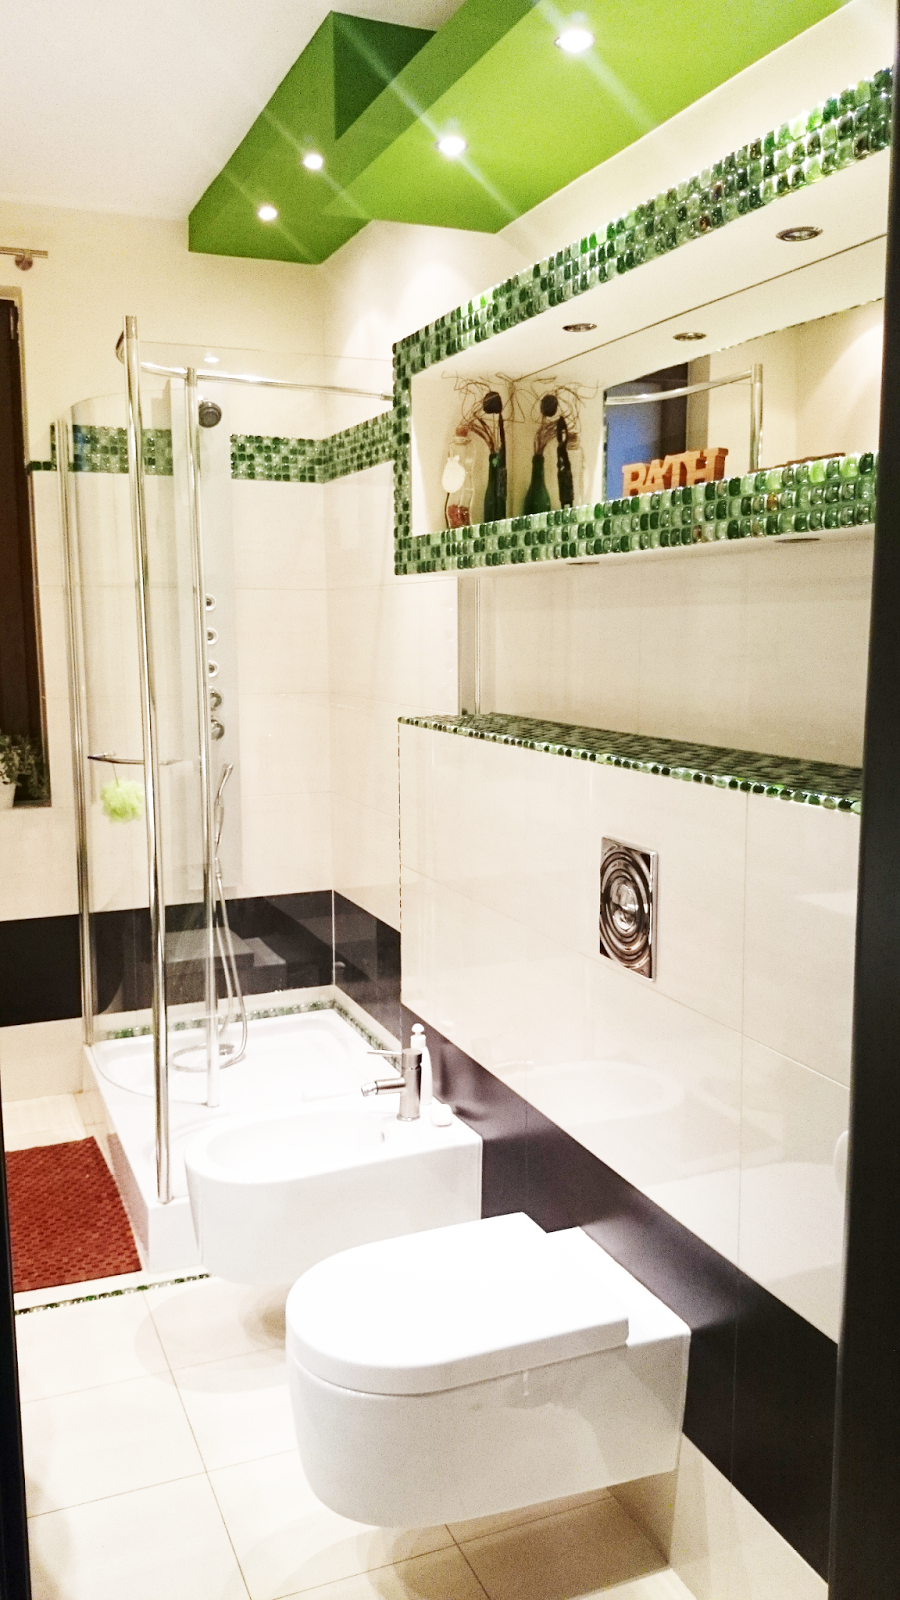 inspiracje wnętrza łazienki,mieszkaj pięknie,loving it,DIY,mozaika szklana i fuga z broketem,indywidualna łazienka,nowoczesna łazienka,zielona łazienka inspiracje,jaki kolor wybrać do łazienki,badroom green inspirations,blog inspirations,blog DIY